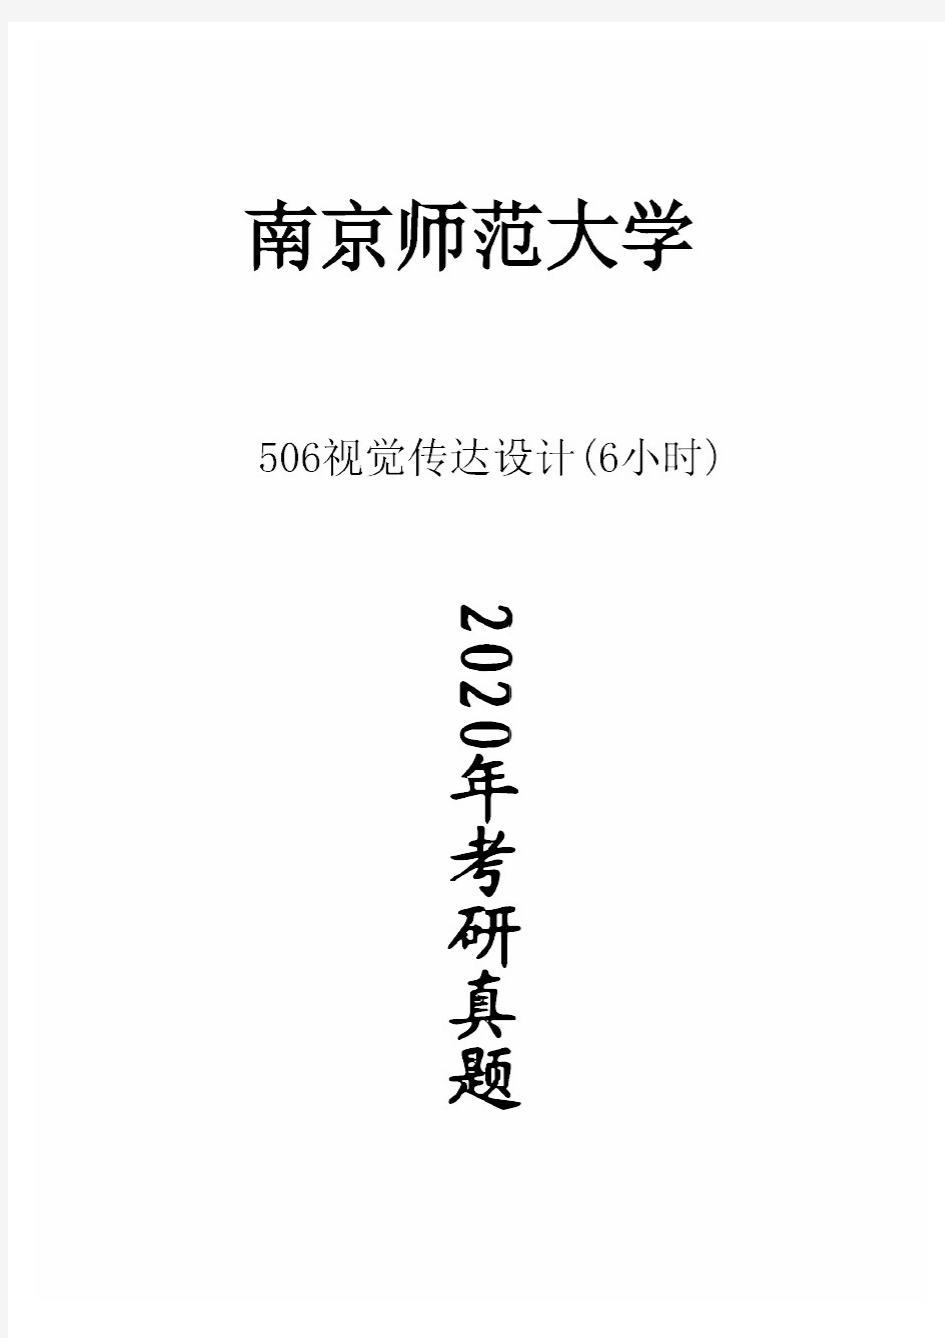 南京师范大学506视觉传达设计(6小时)2020年考研真题试卷试题